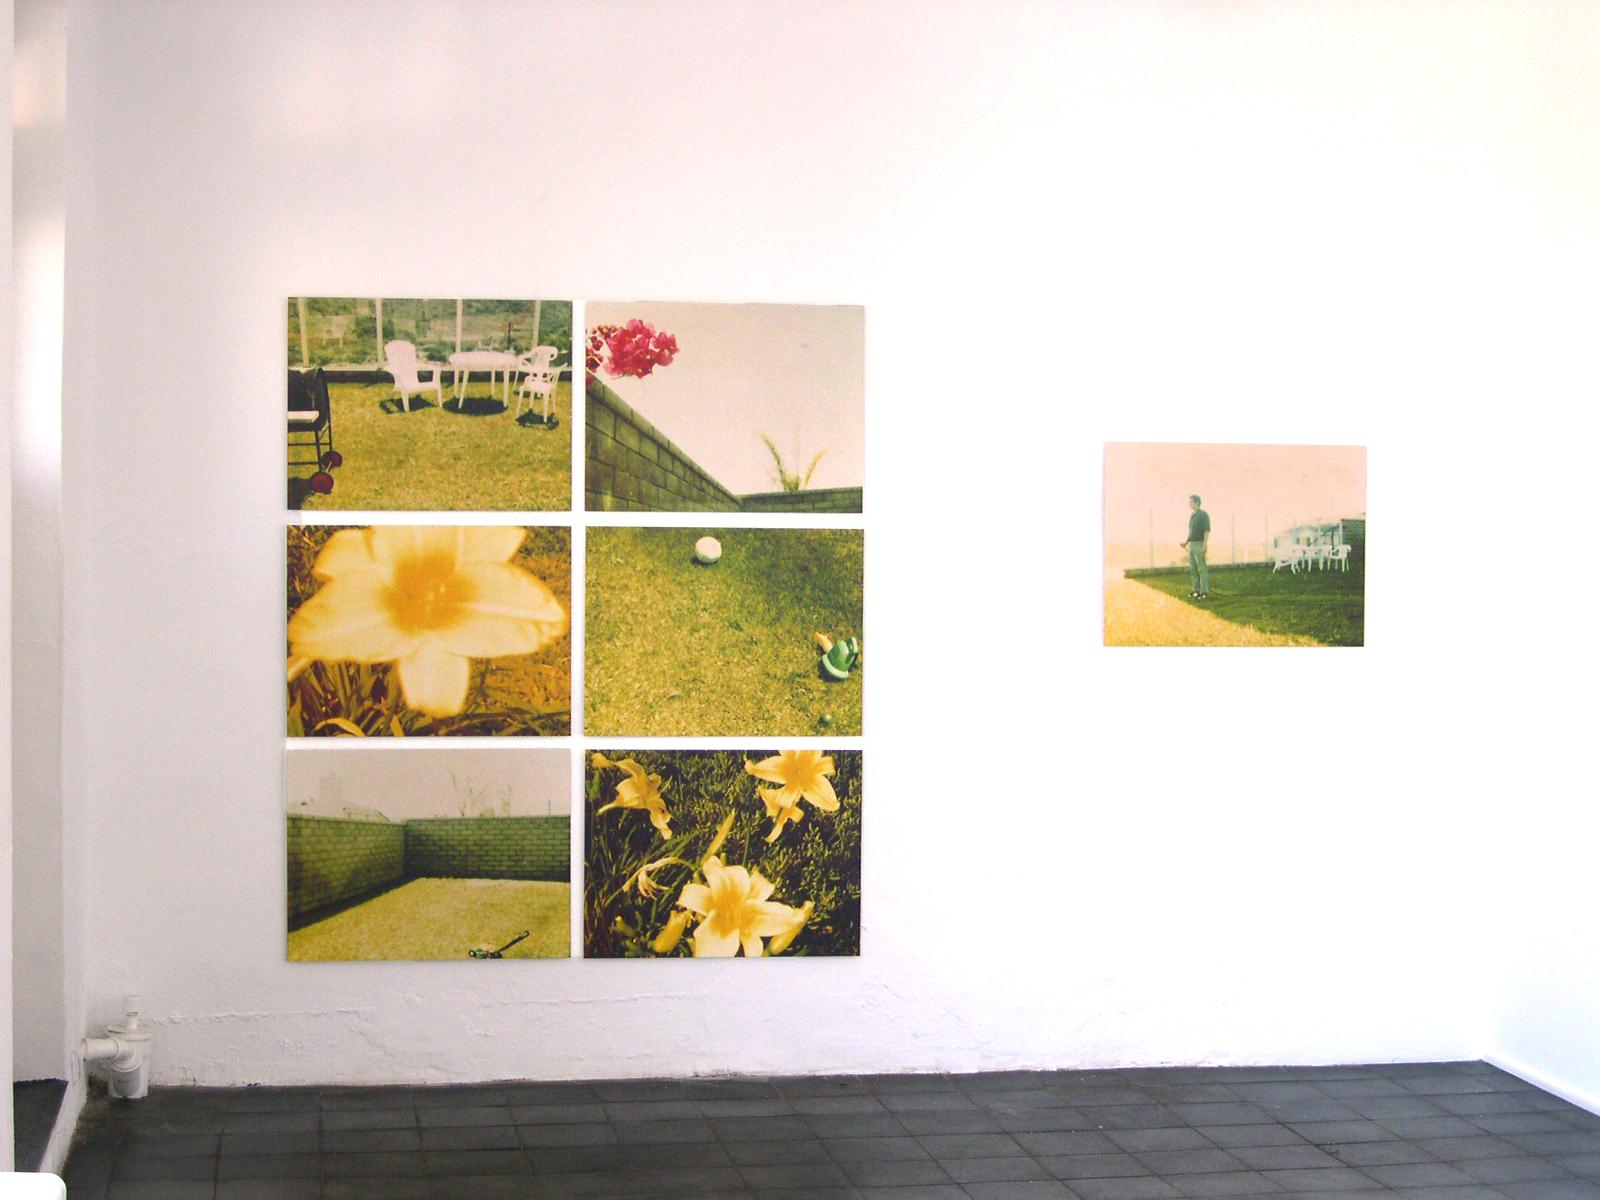 Suburbia, analog, mounted. Polaroid, photograph, 21st Century, landscape,  4